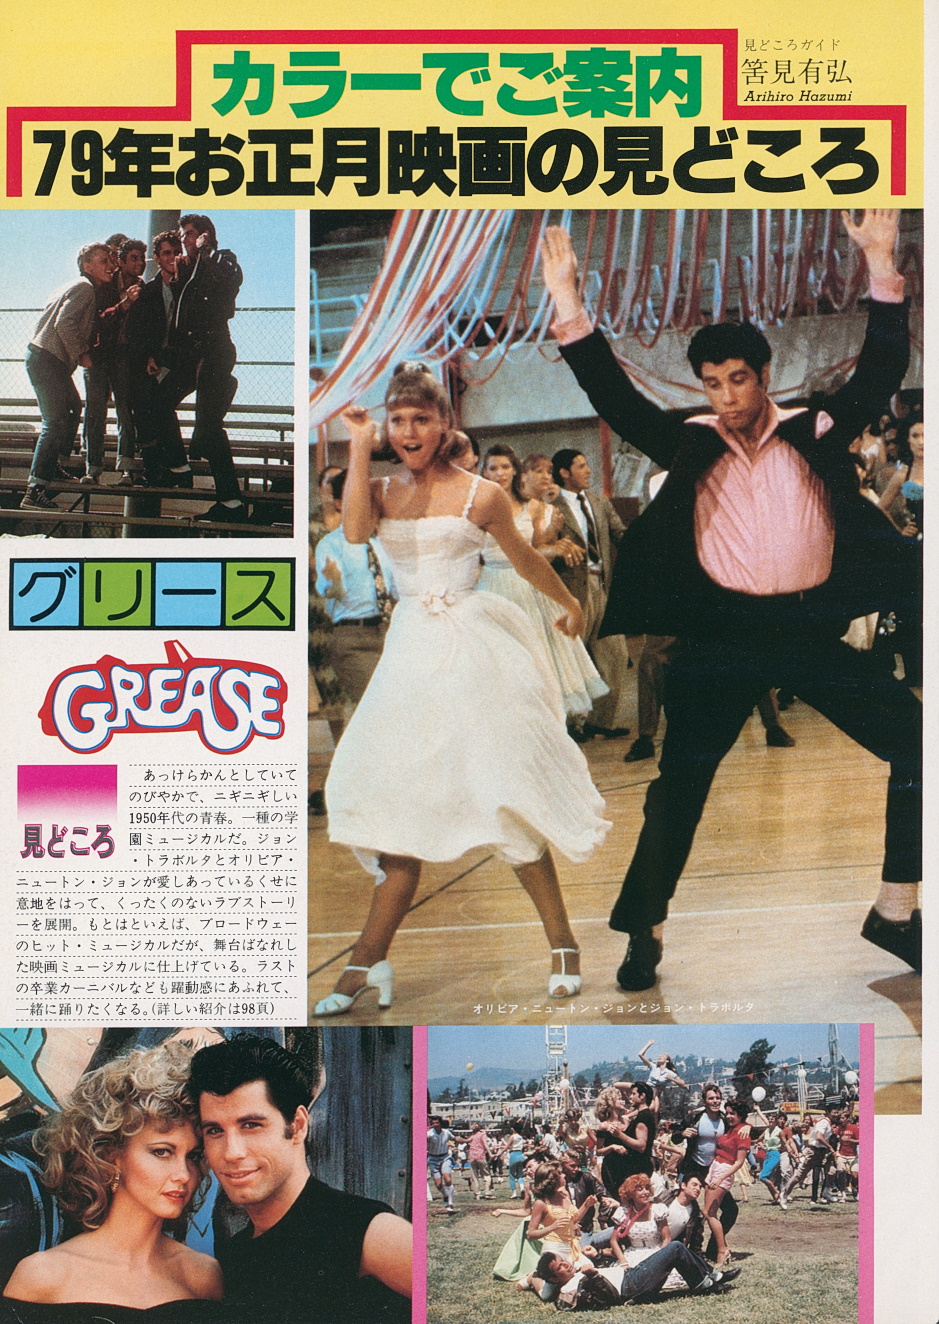 Olivia in Grease - Japanese magazine